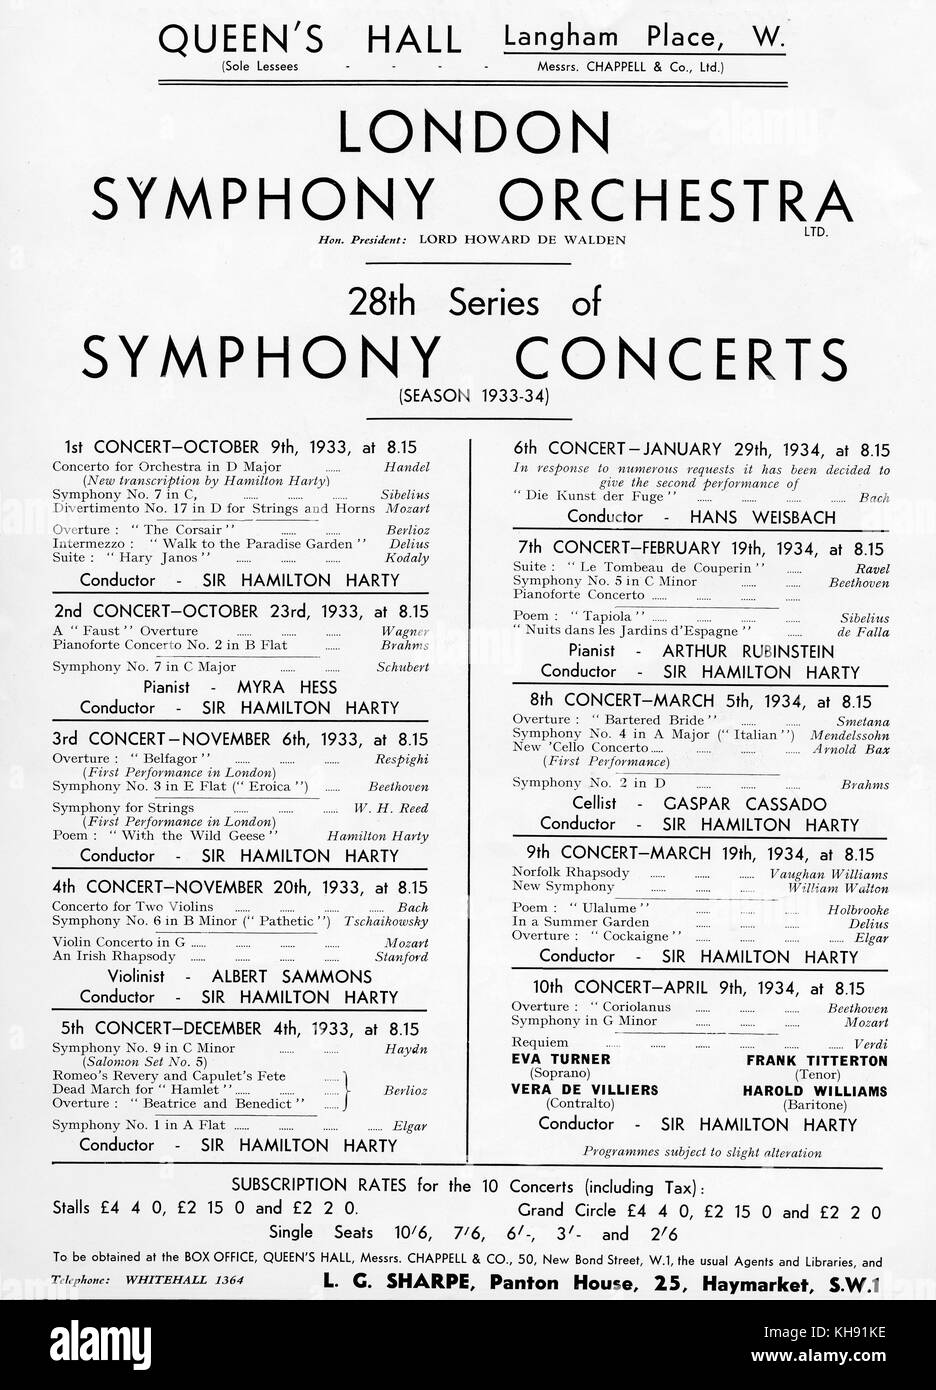 Queen's Hall Concert Hall, Londres - advetisment pour 1933 - saison 1934 des concerts symphoniques. Banque D'Images